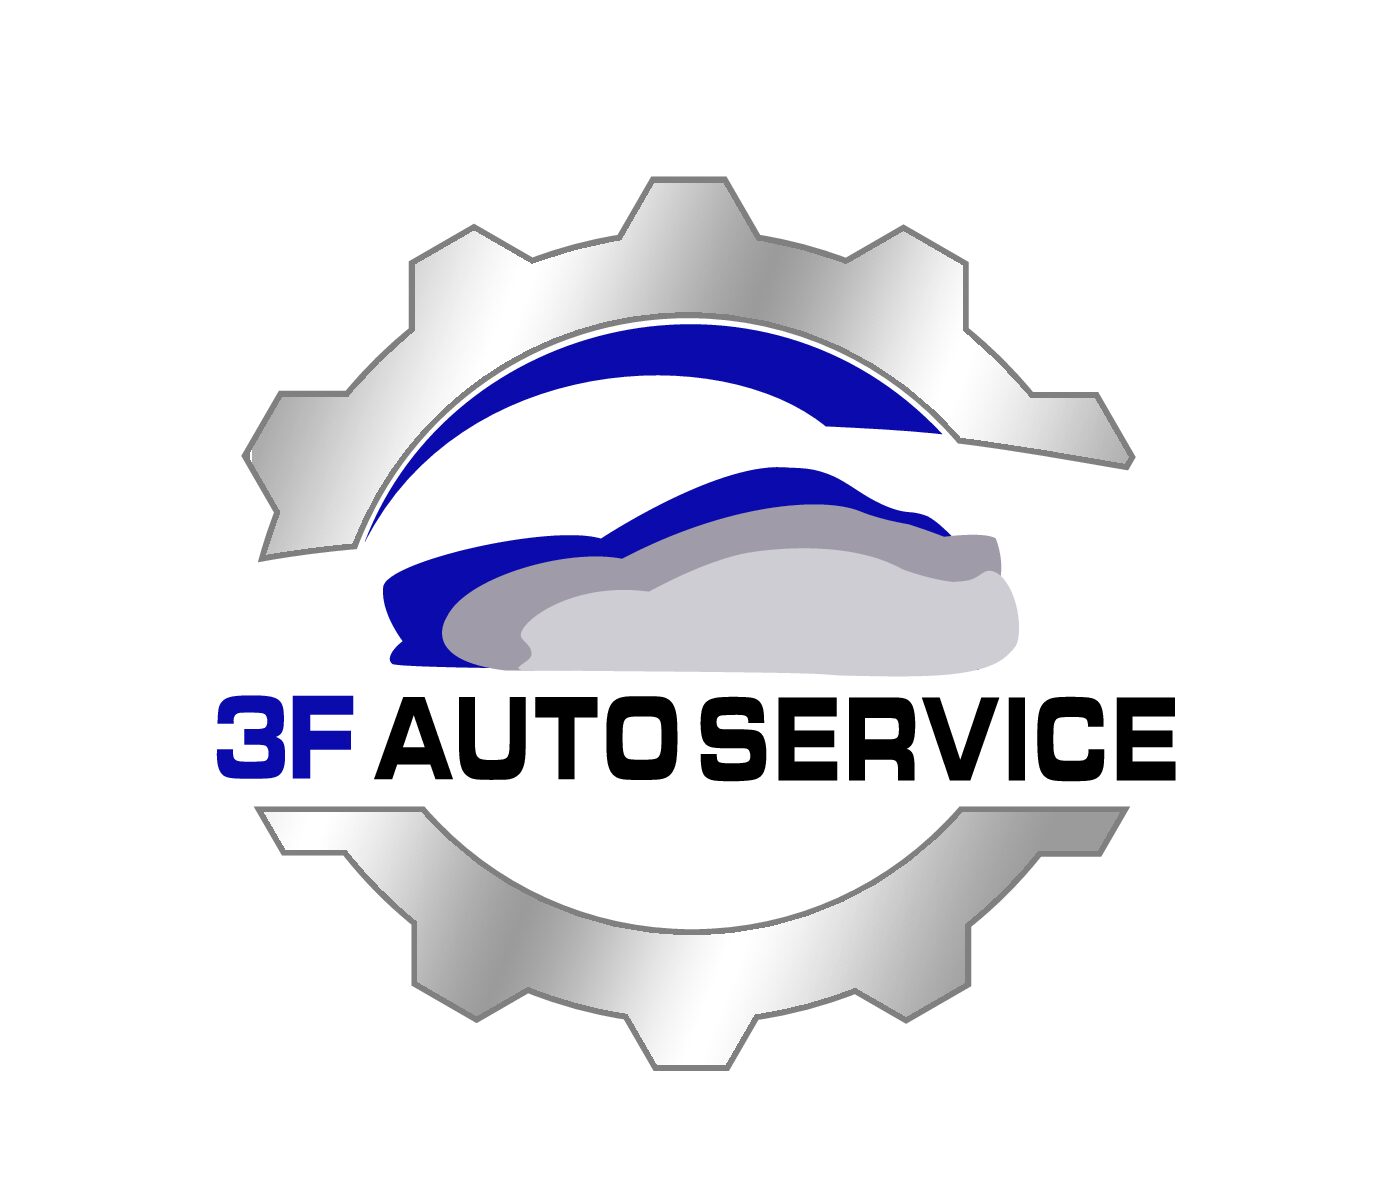 3F Auto Service vous présente sa nouvelle identité visuelle